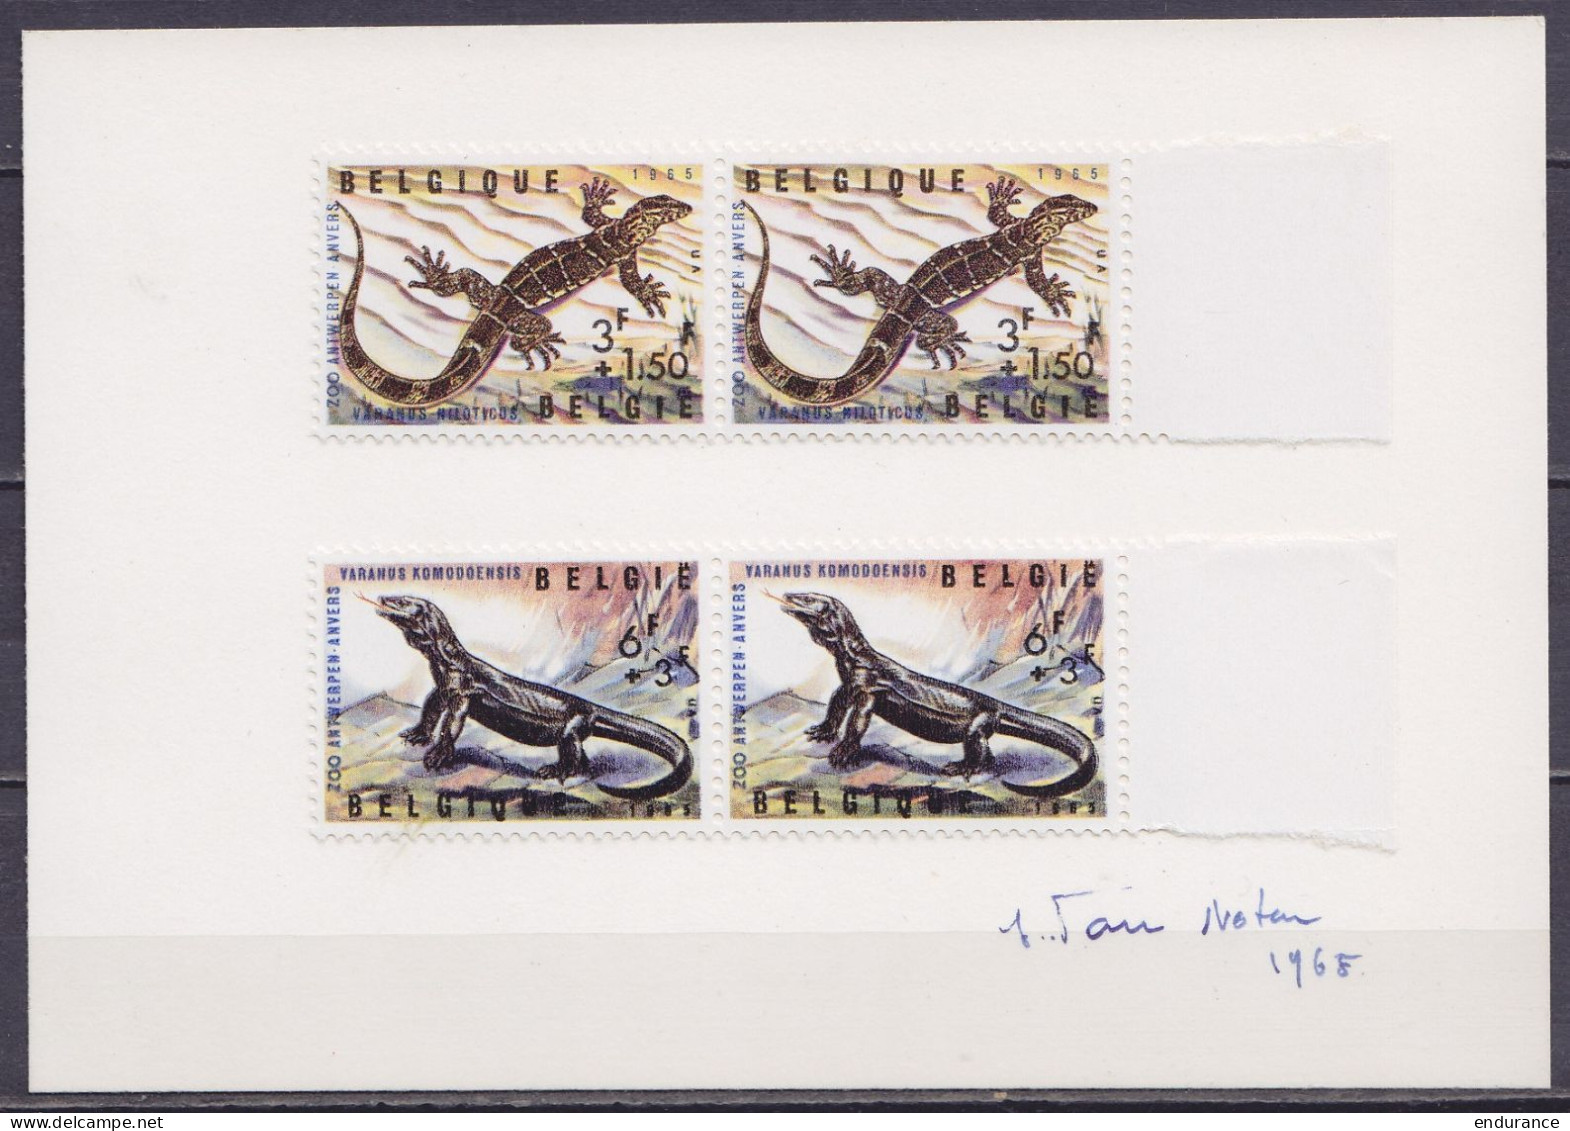 Paires N°1346+1347 (reptiles Du Zoo D'Anvers) Sur Carte Signée Jean Van Noten 1968 - Lettres & Documents